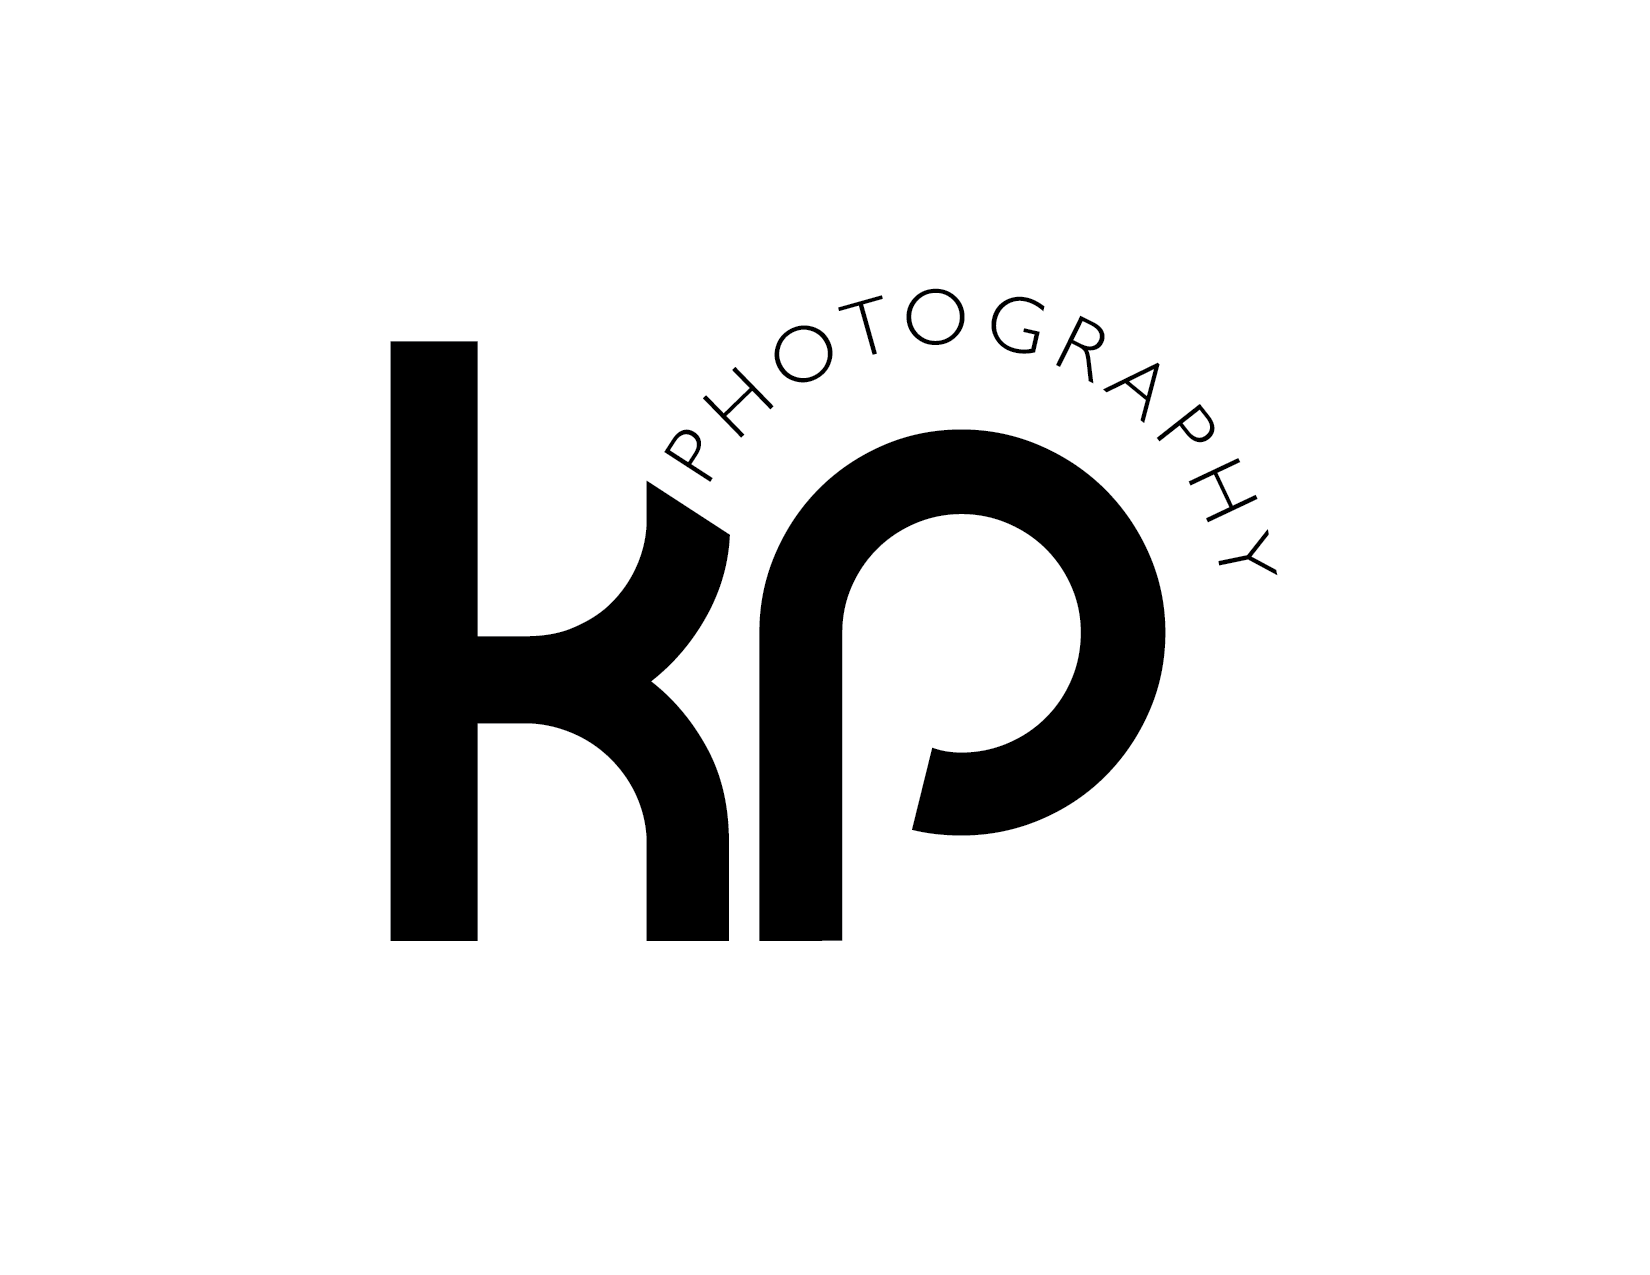 KP Logo - Logo Design for KP Photography | My Work | Logos design, Logos, Logo ...